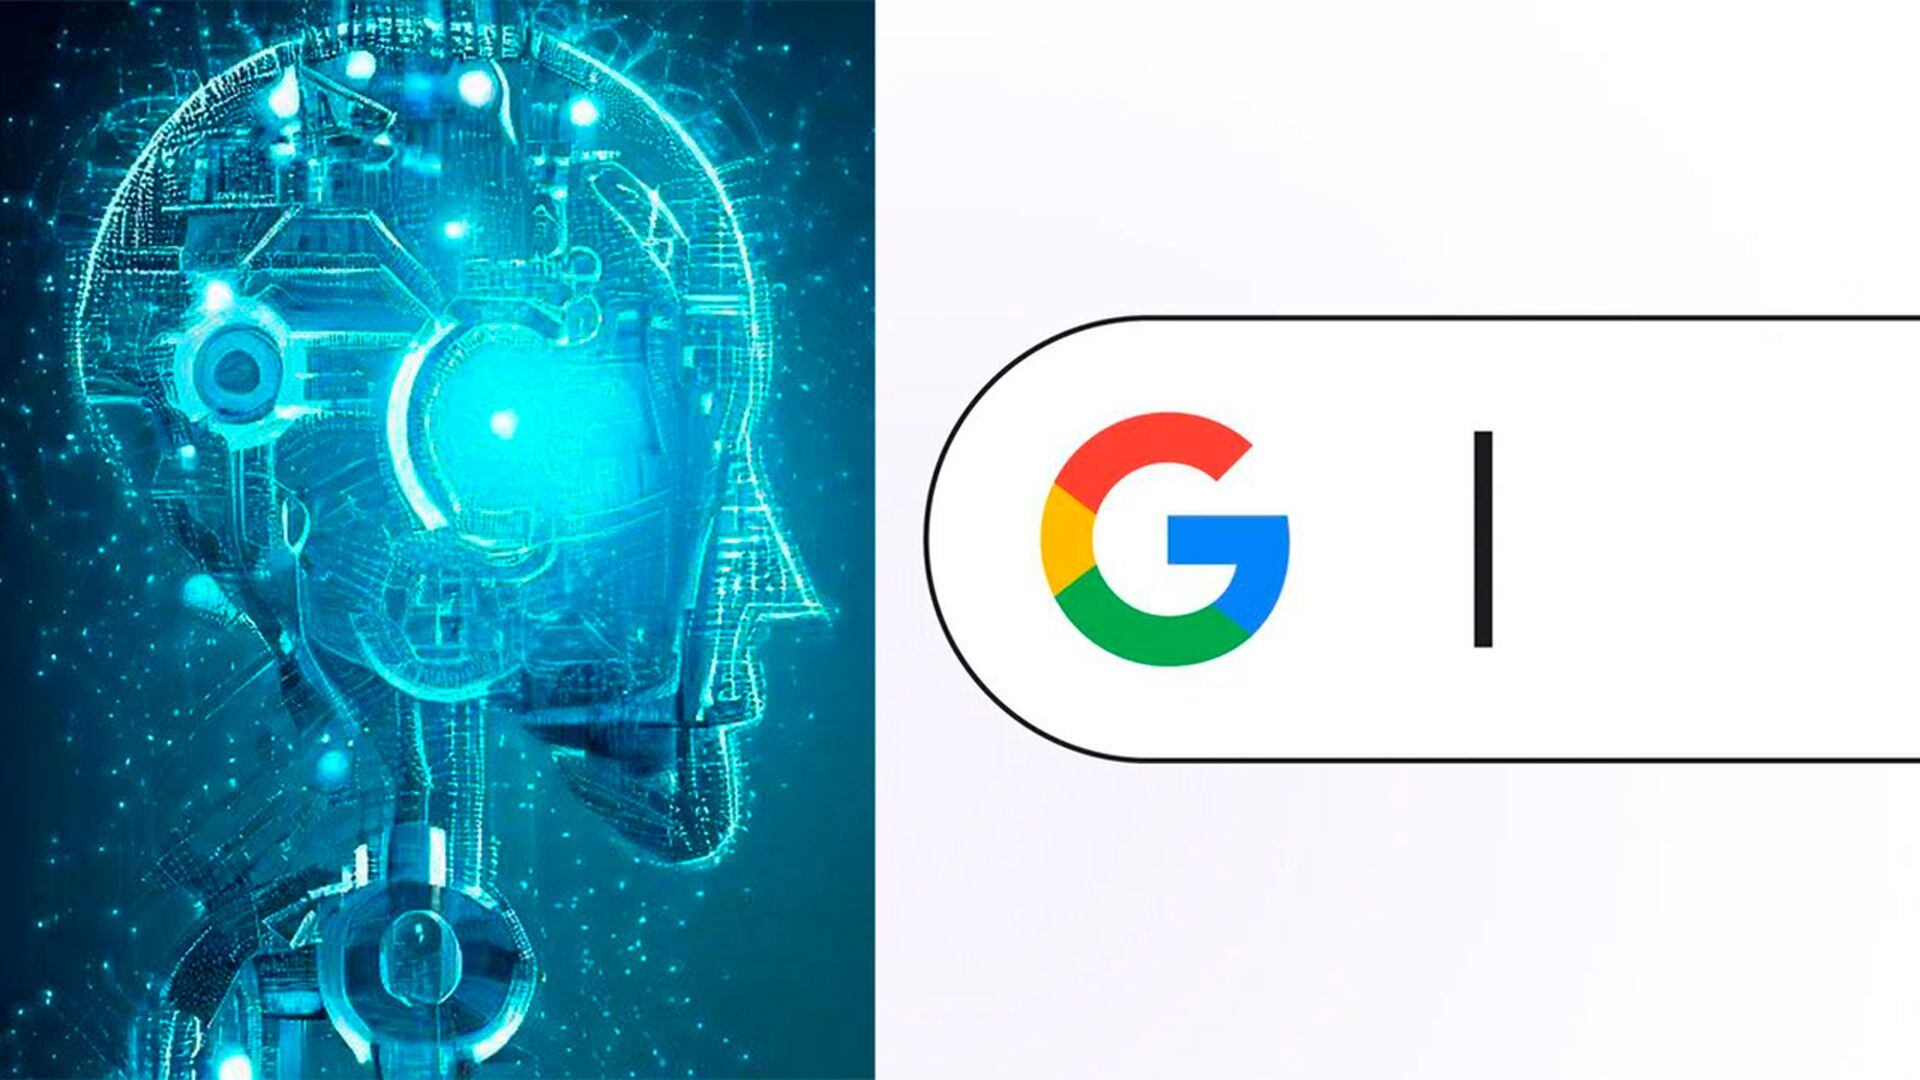 Google Cloud usa jogos gratuitos para ensinar IA generativa